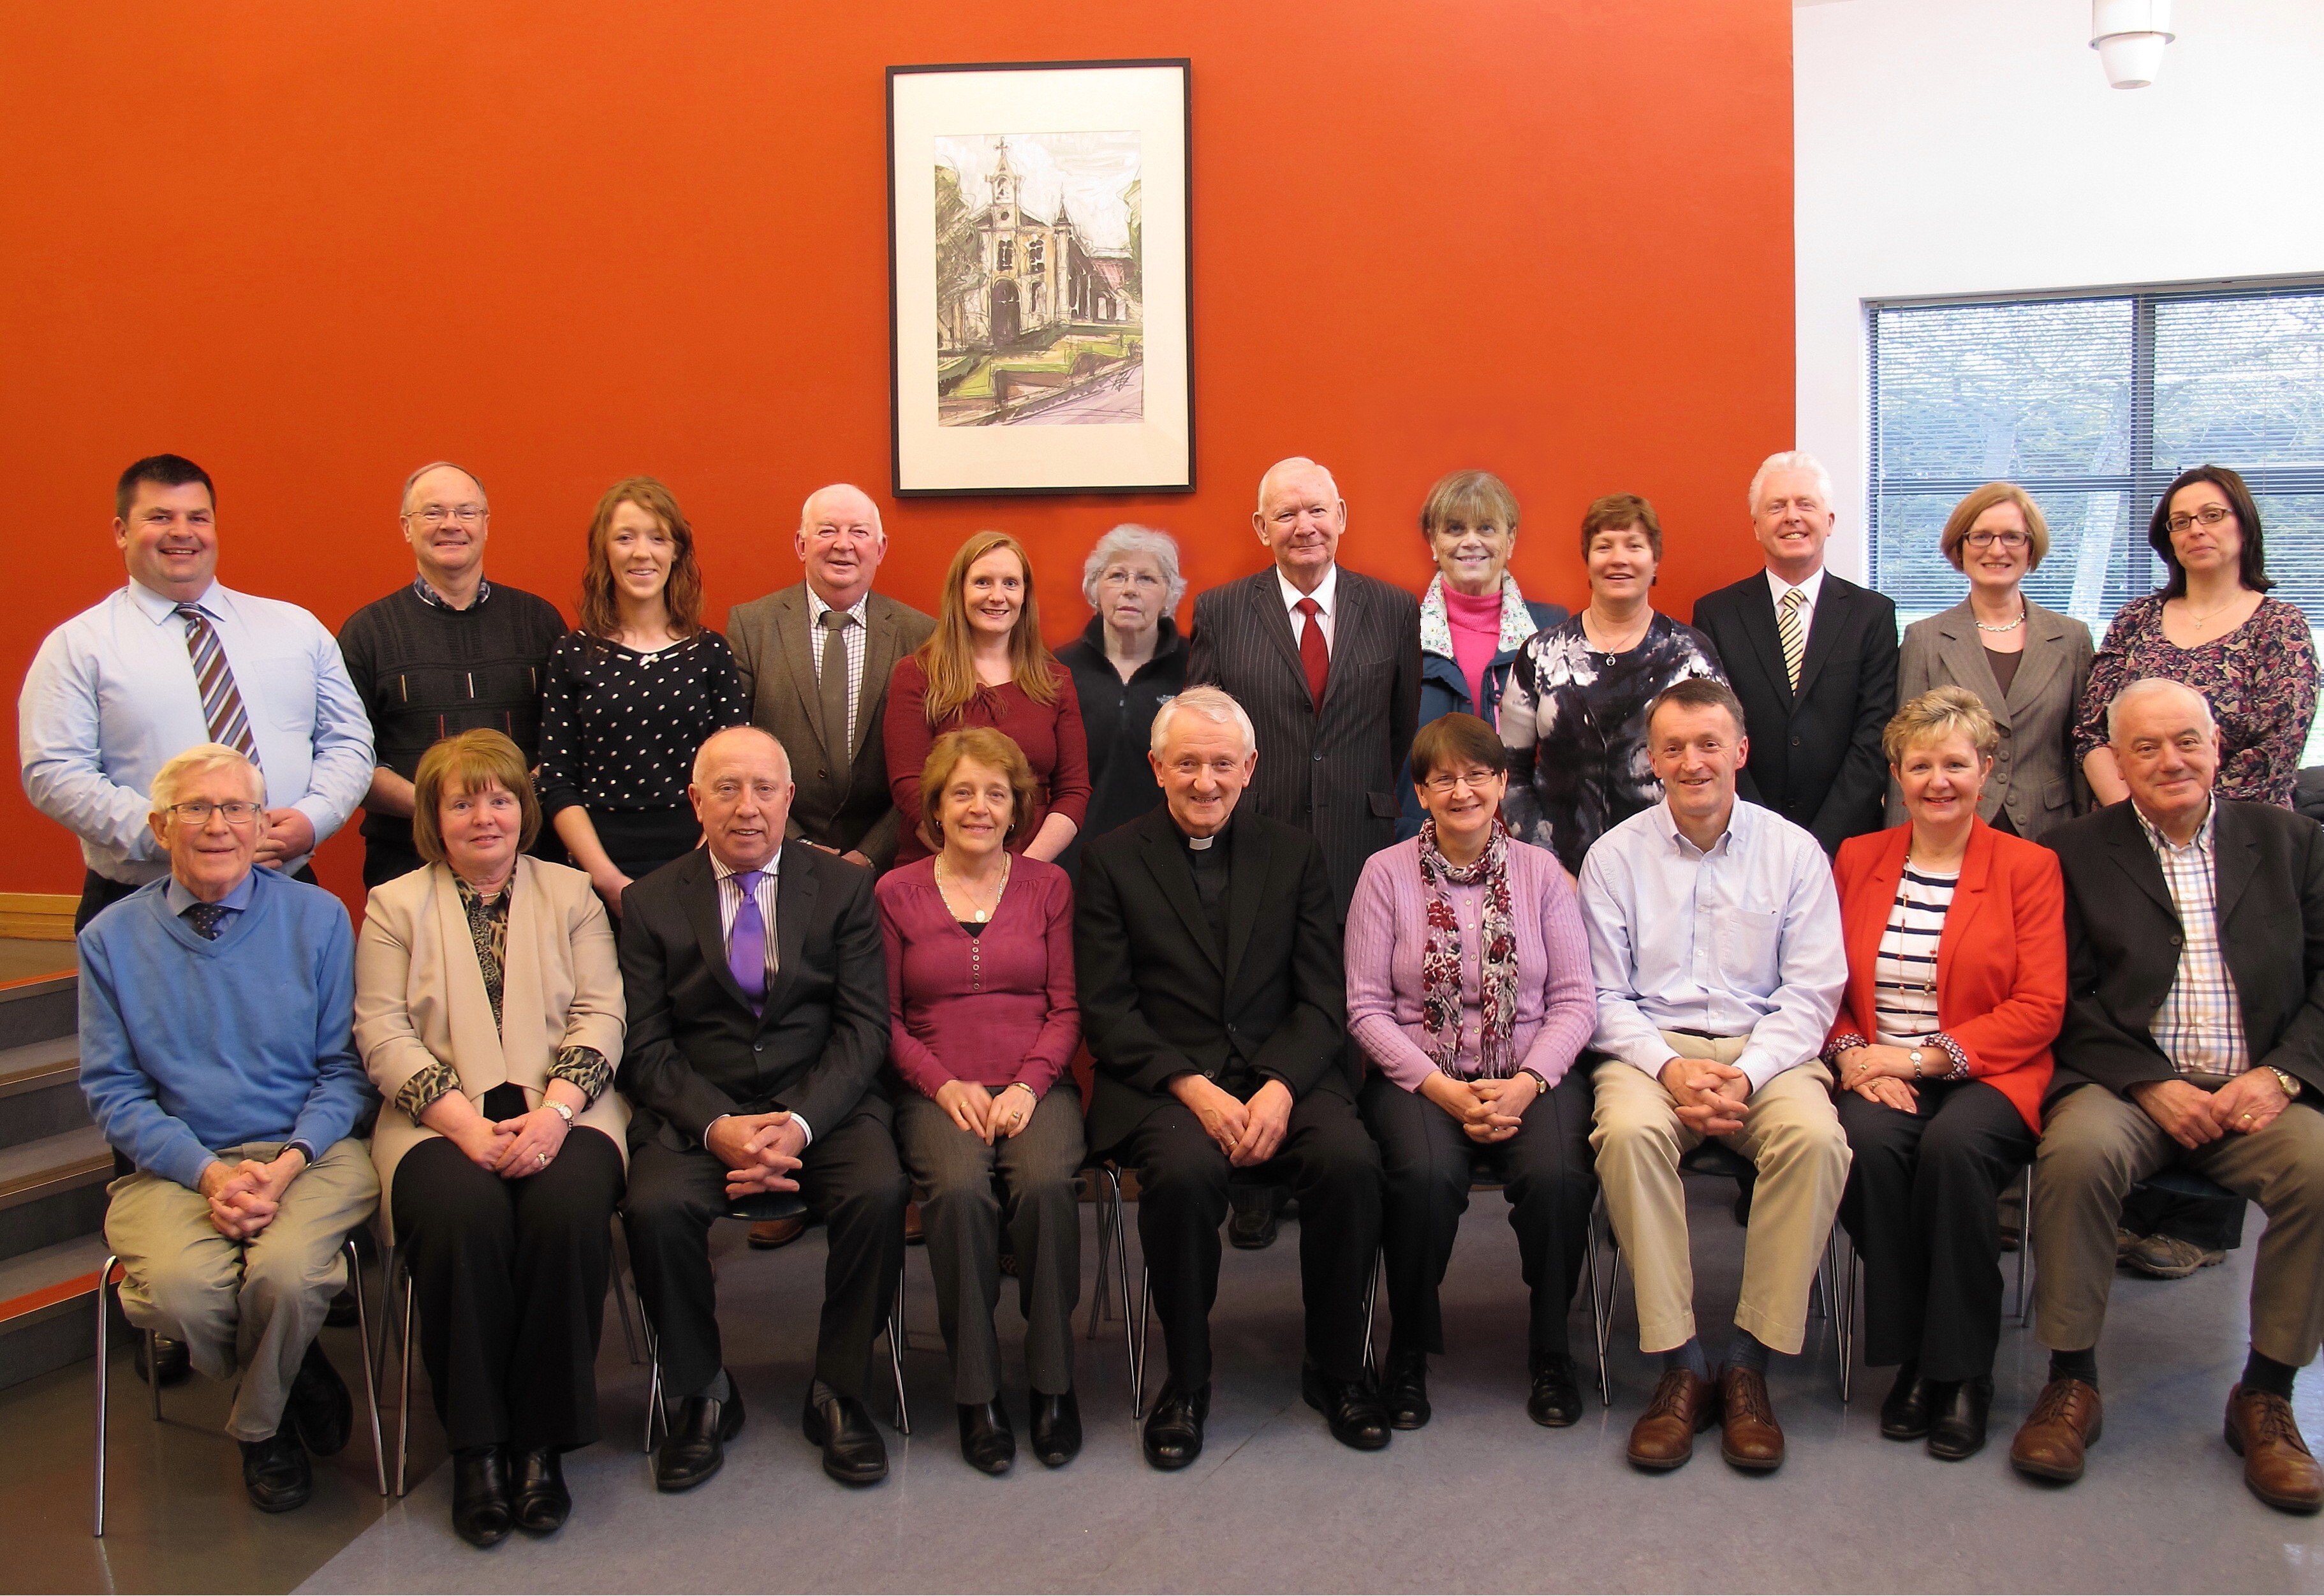 Parish Pastoral Council